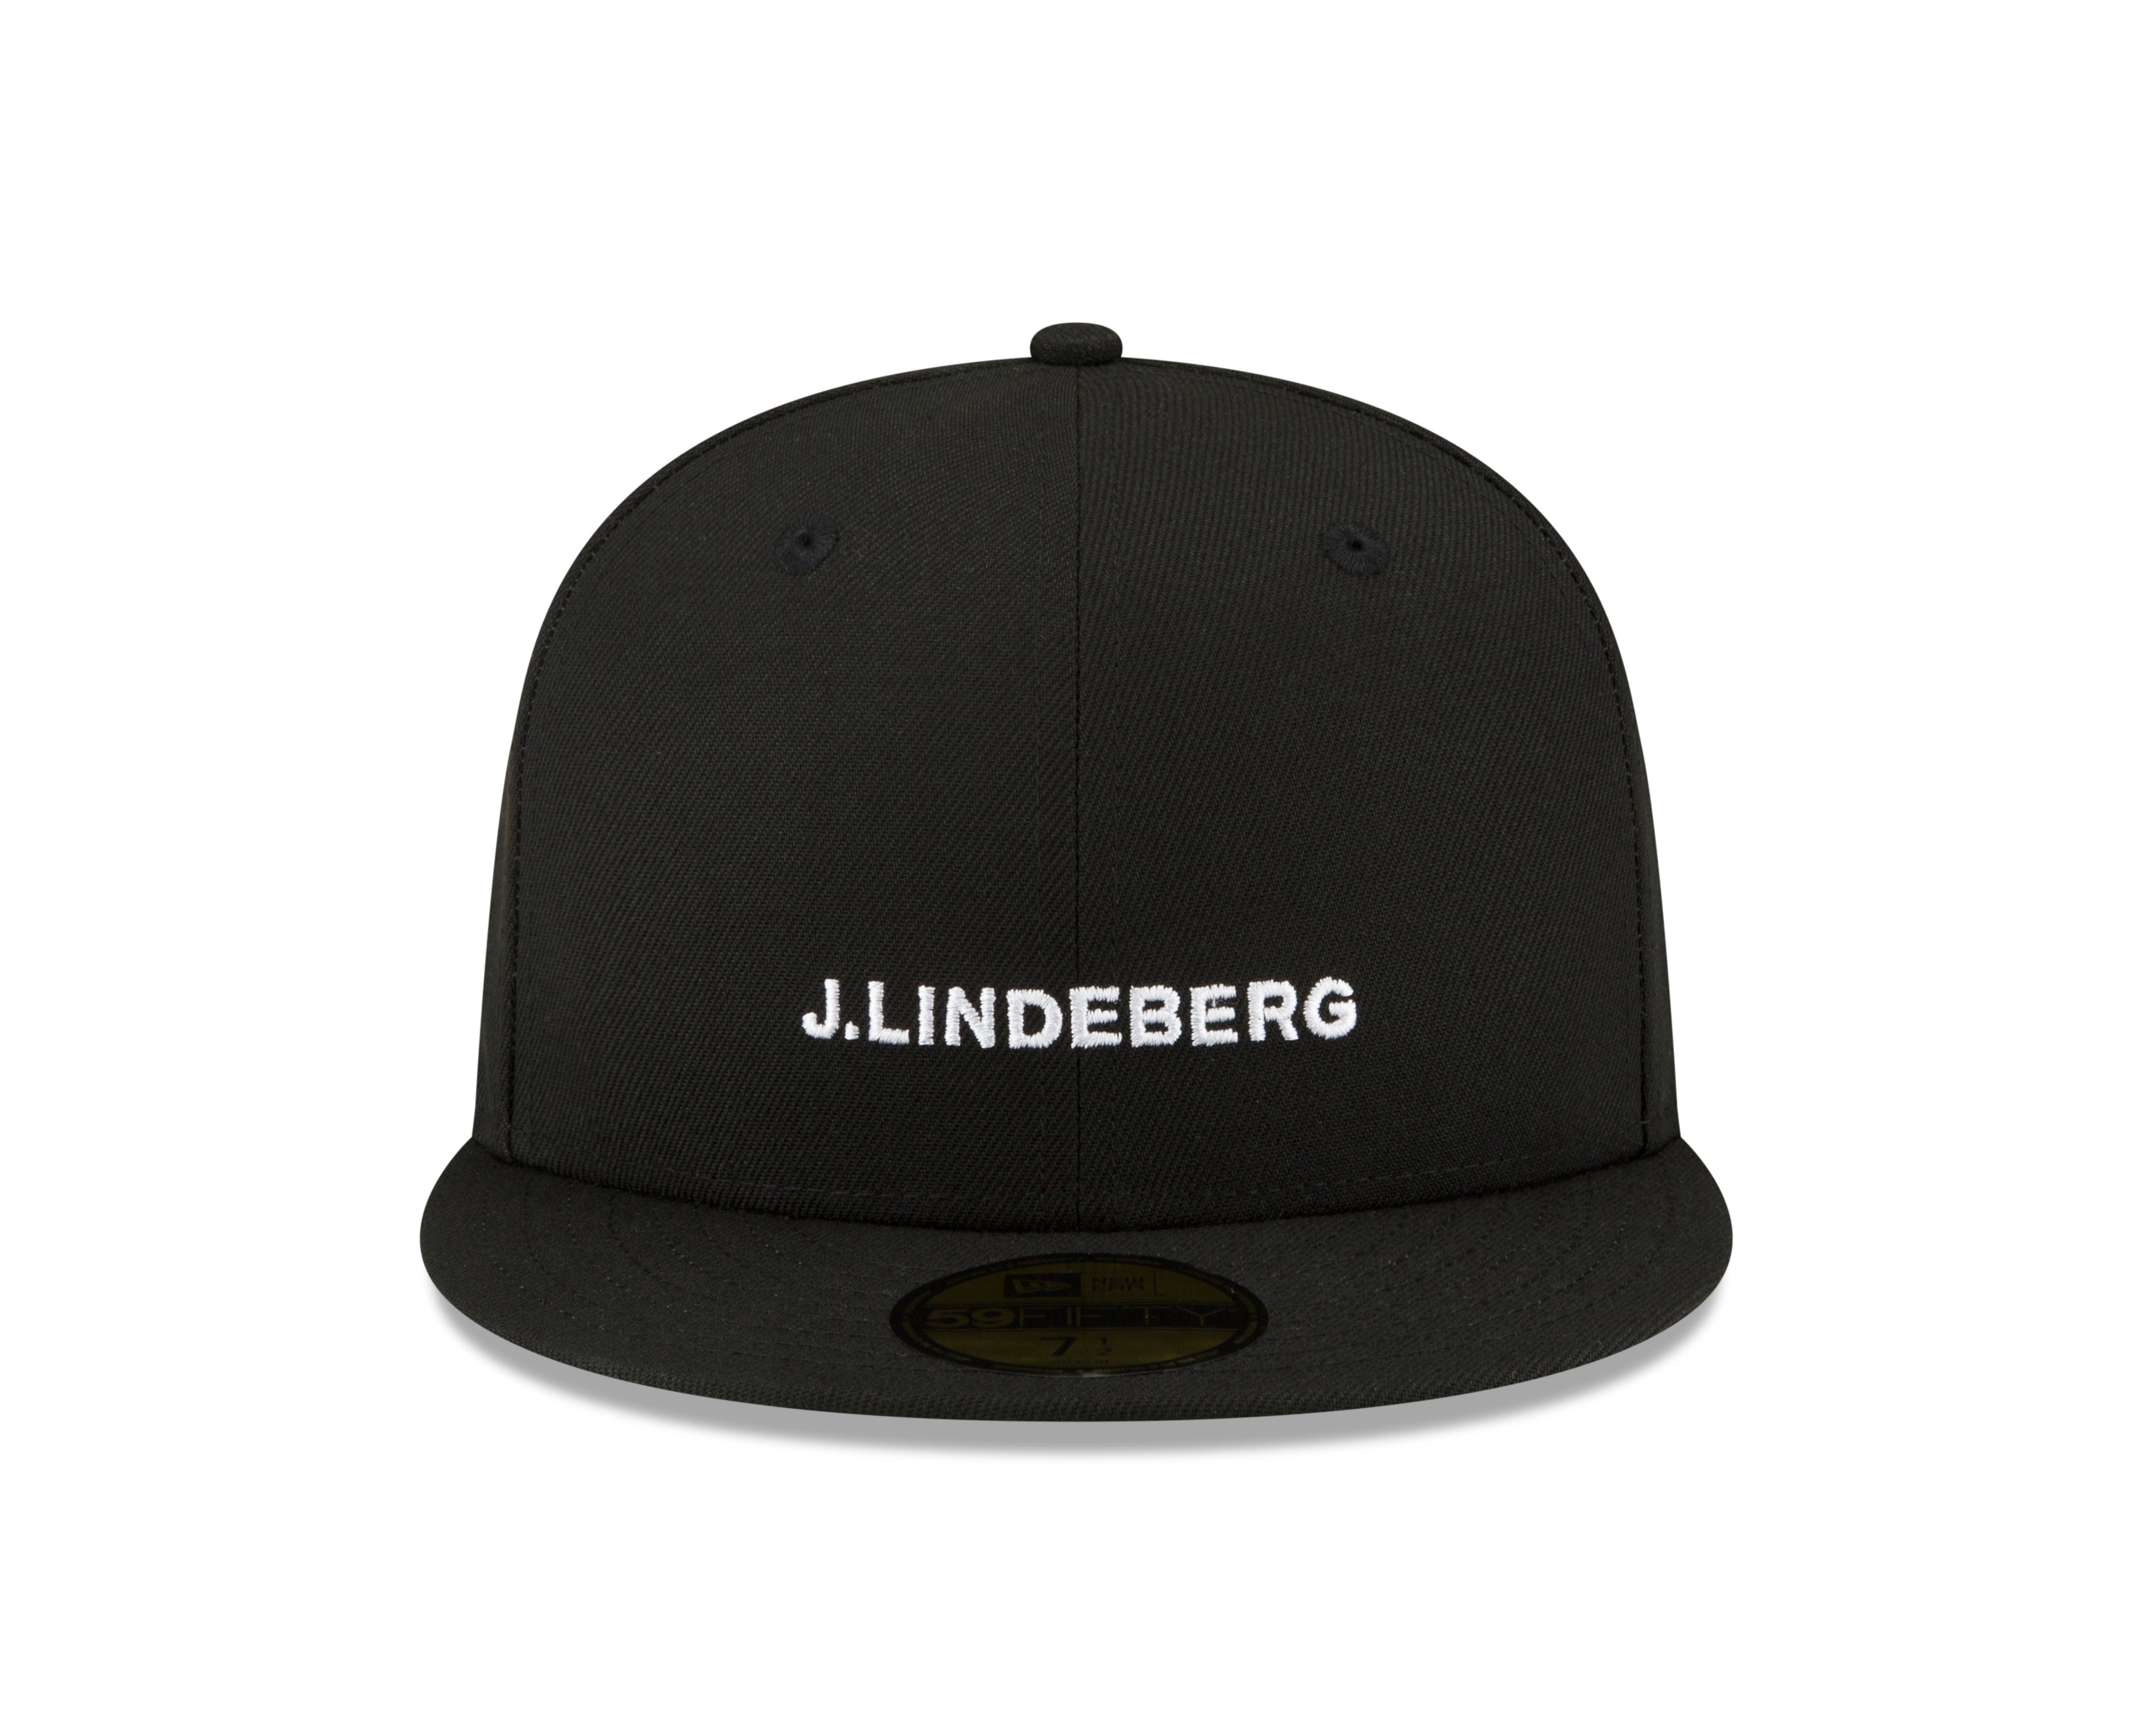 제이린드버그 J.LINDEBERG JL x New Era 59FIFTY Black